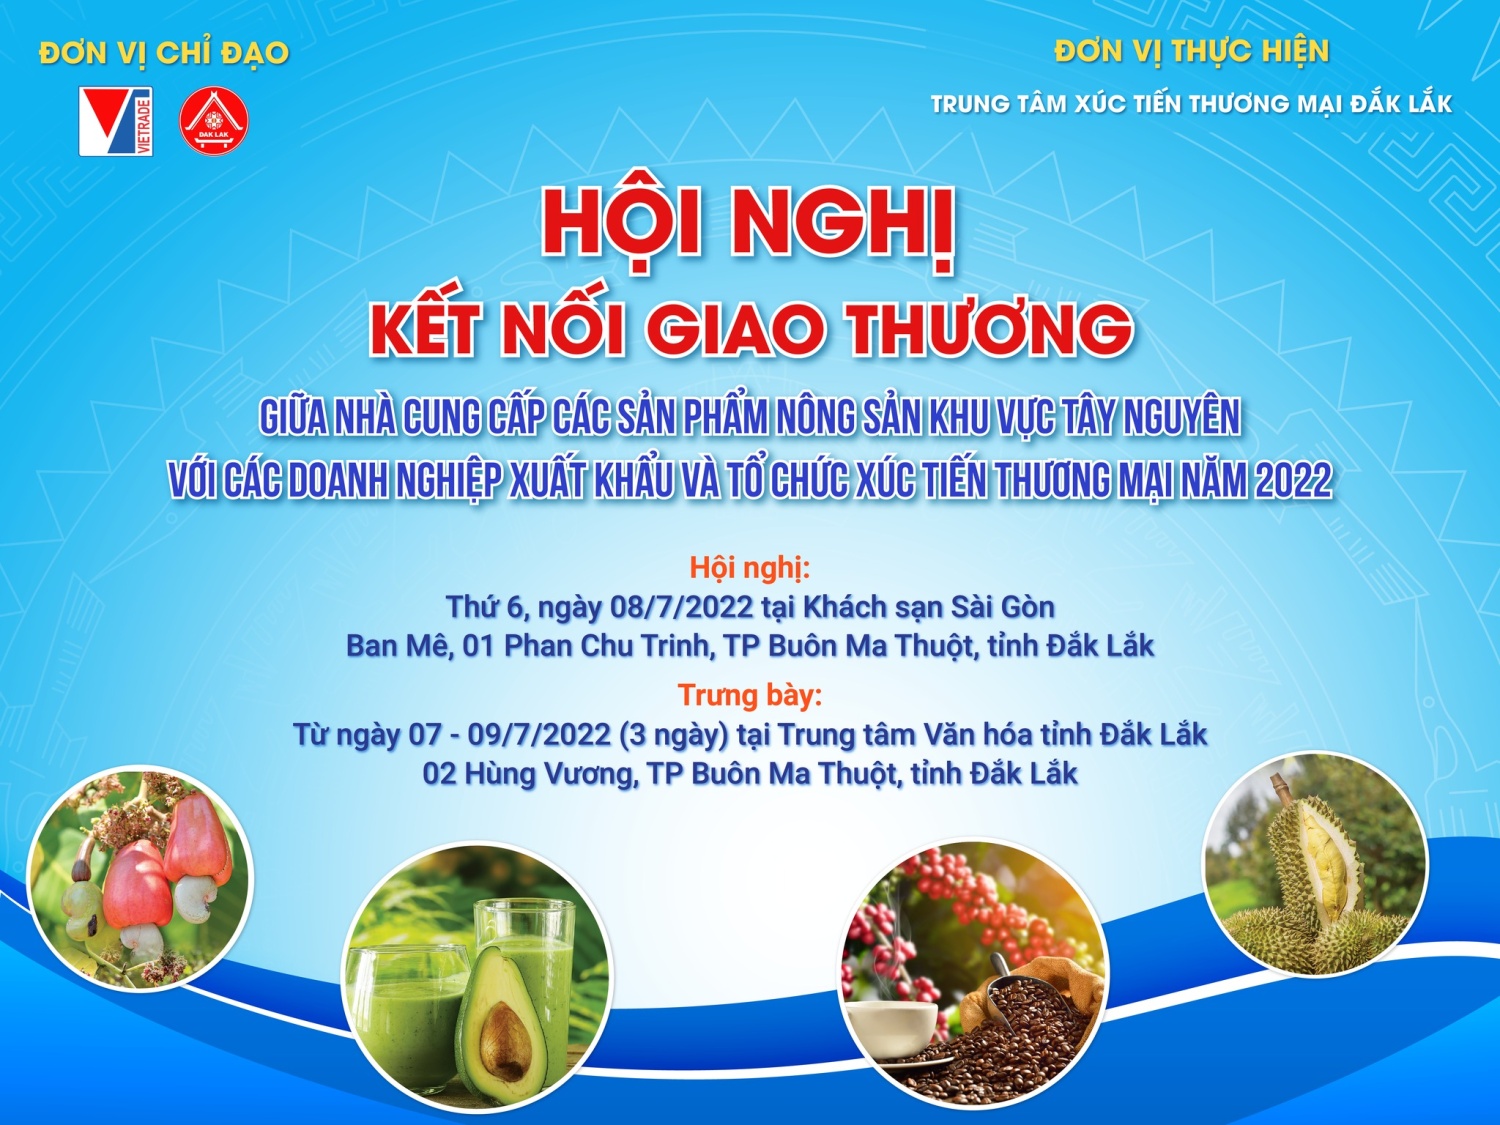 Tỉnh Đắk Lắk sẽ tổ chức Hội nghị kết nối giao thương khu vực Tây Nguyên trong tháng 7 năm 2022 